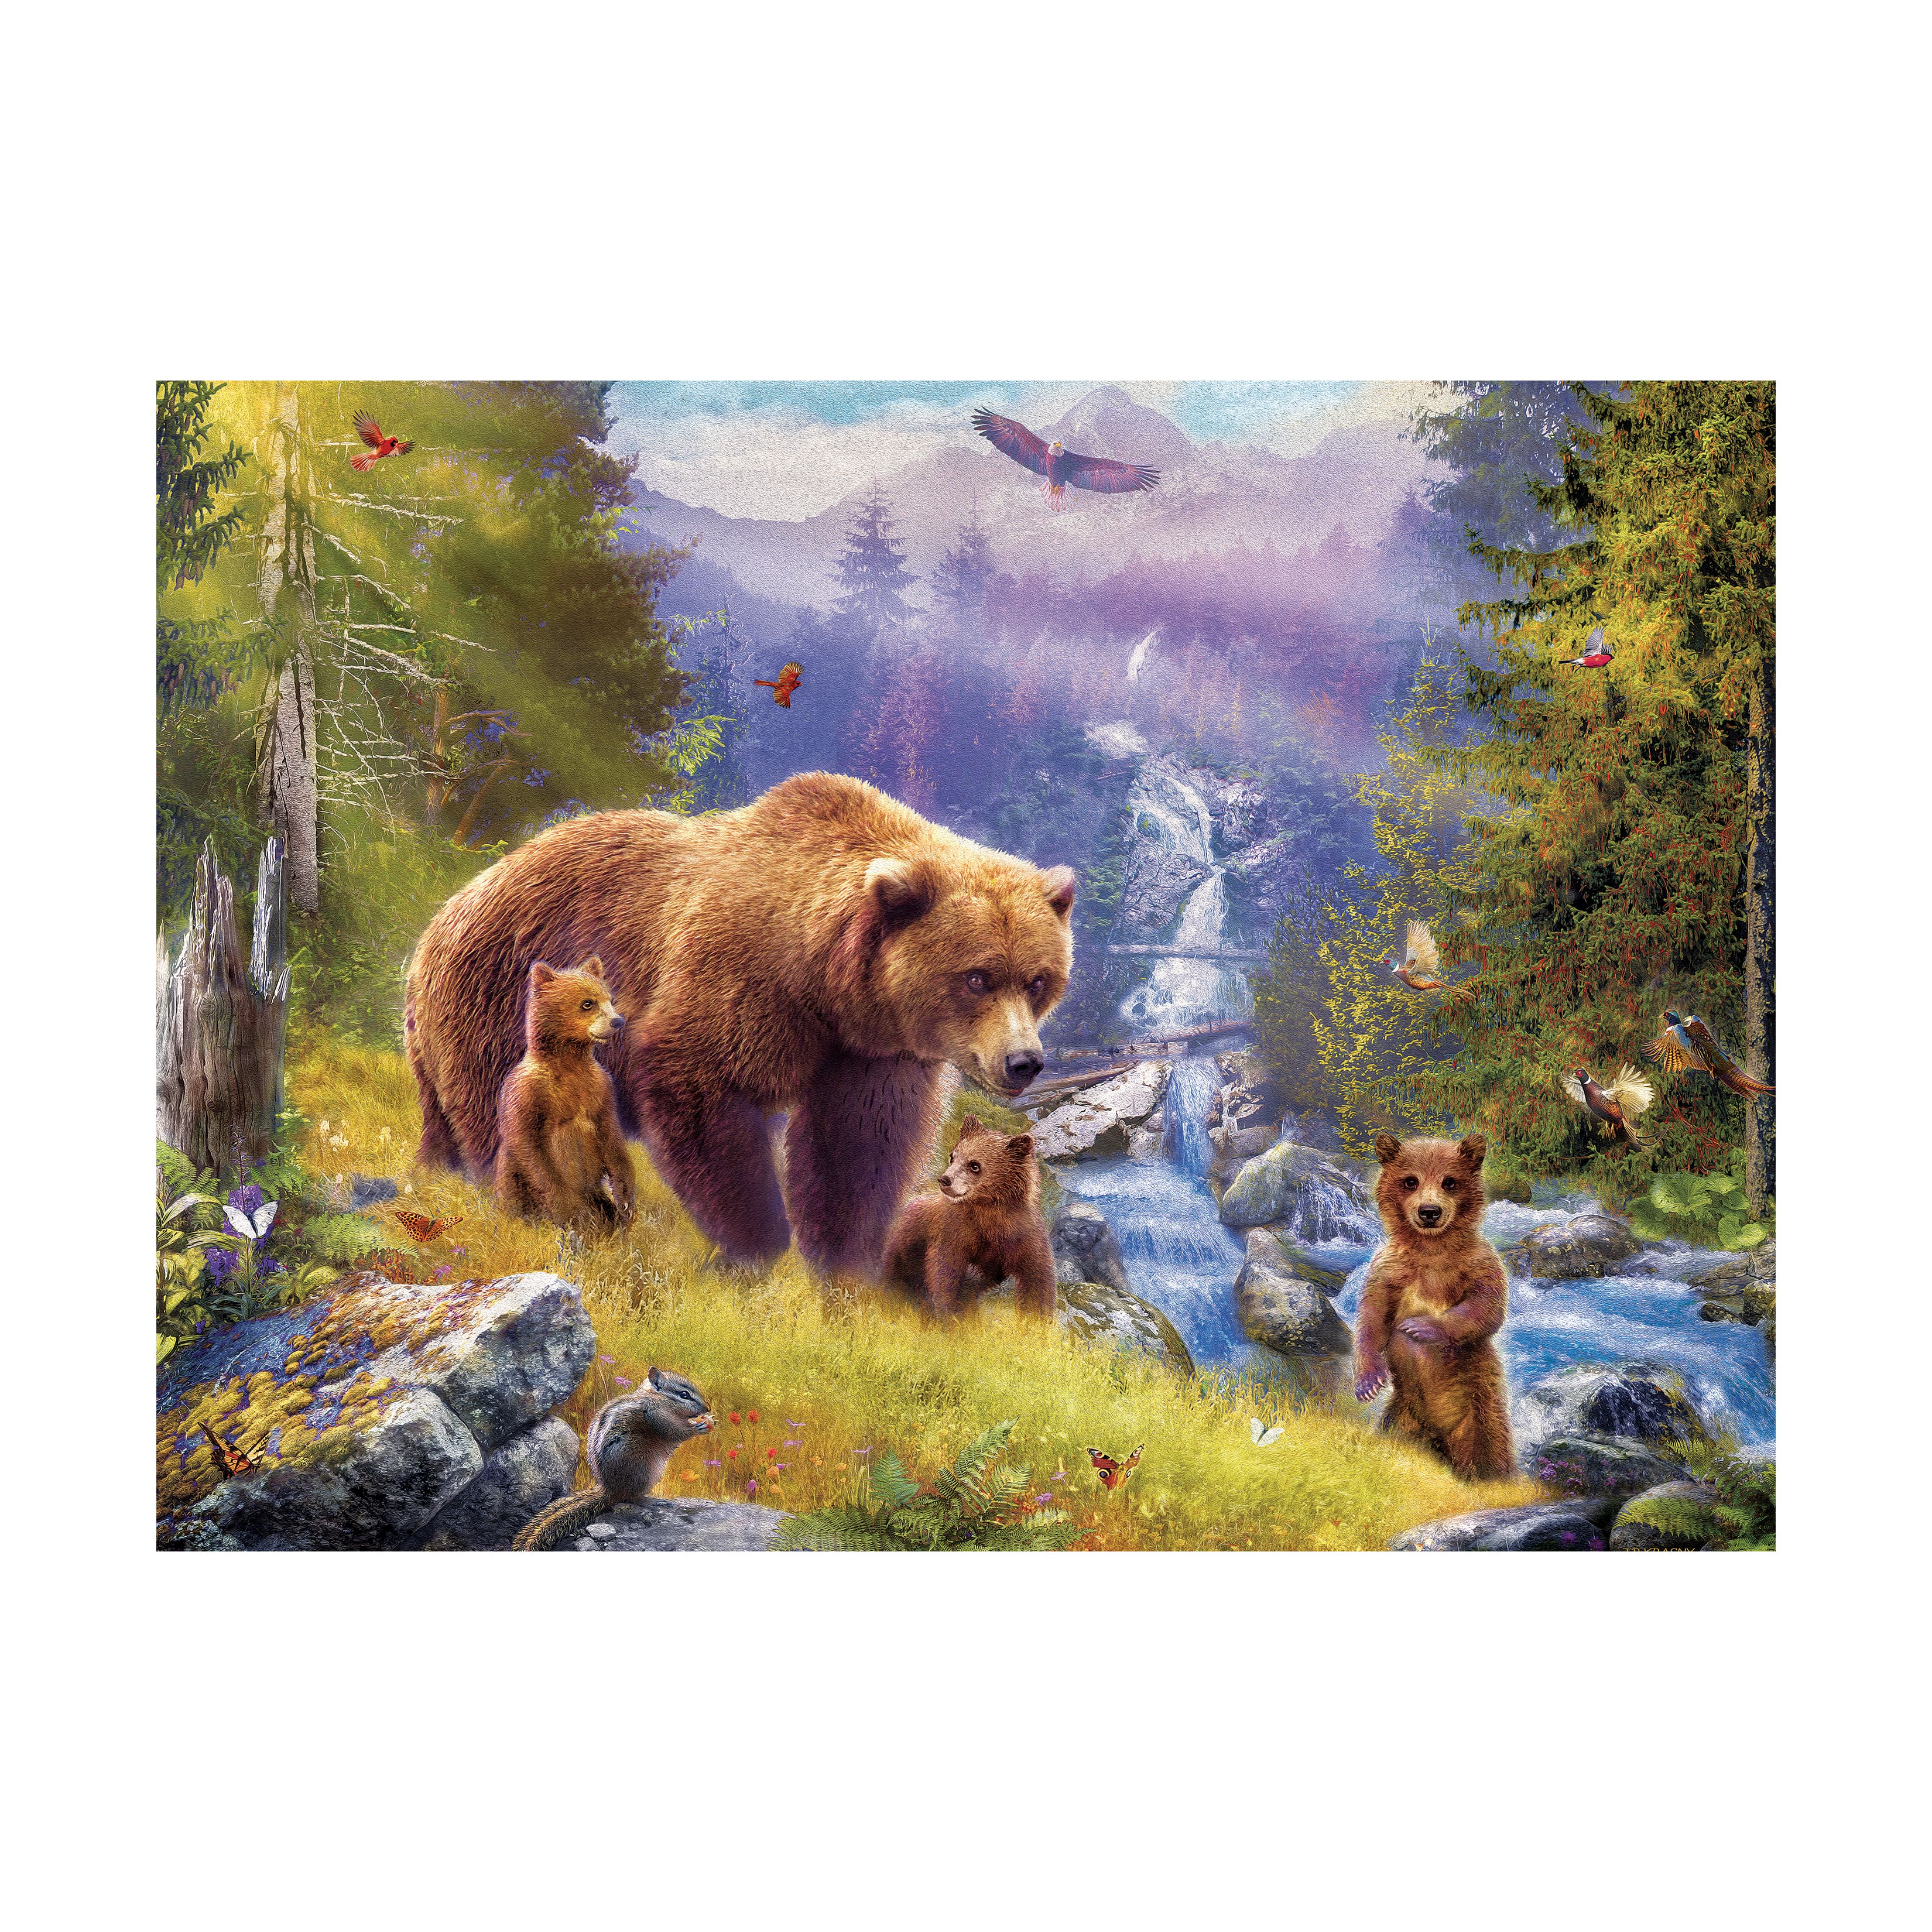 Jan Patrik - Grizzly Cubs Large Pieces Family Puzzle: 500 Pcs